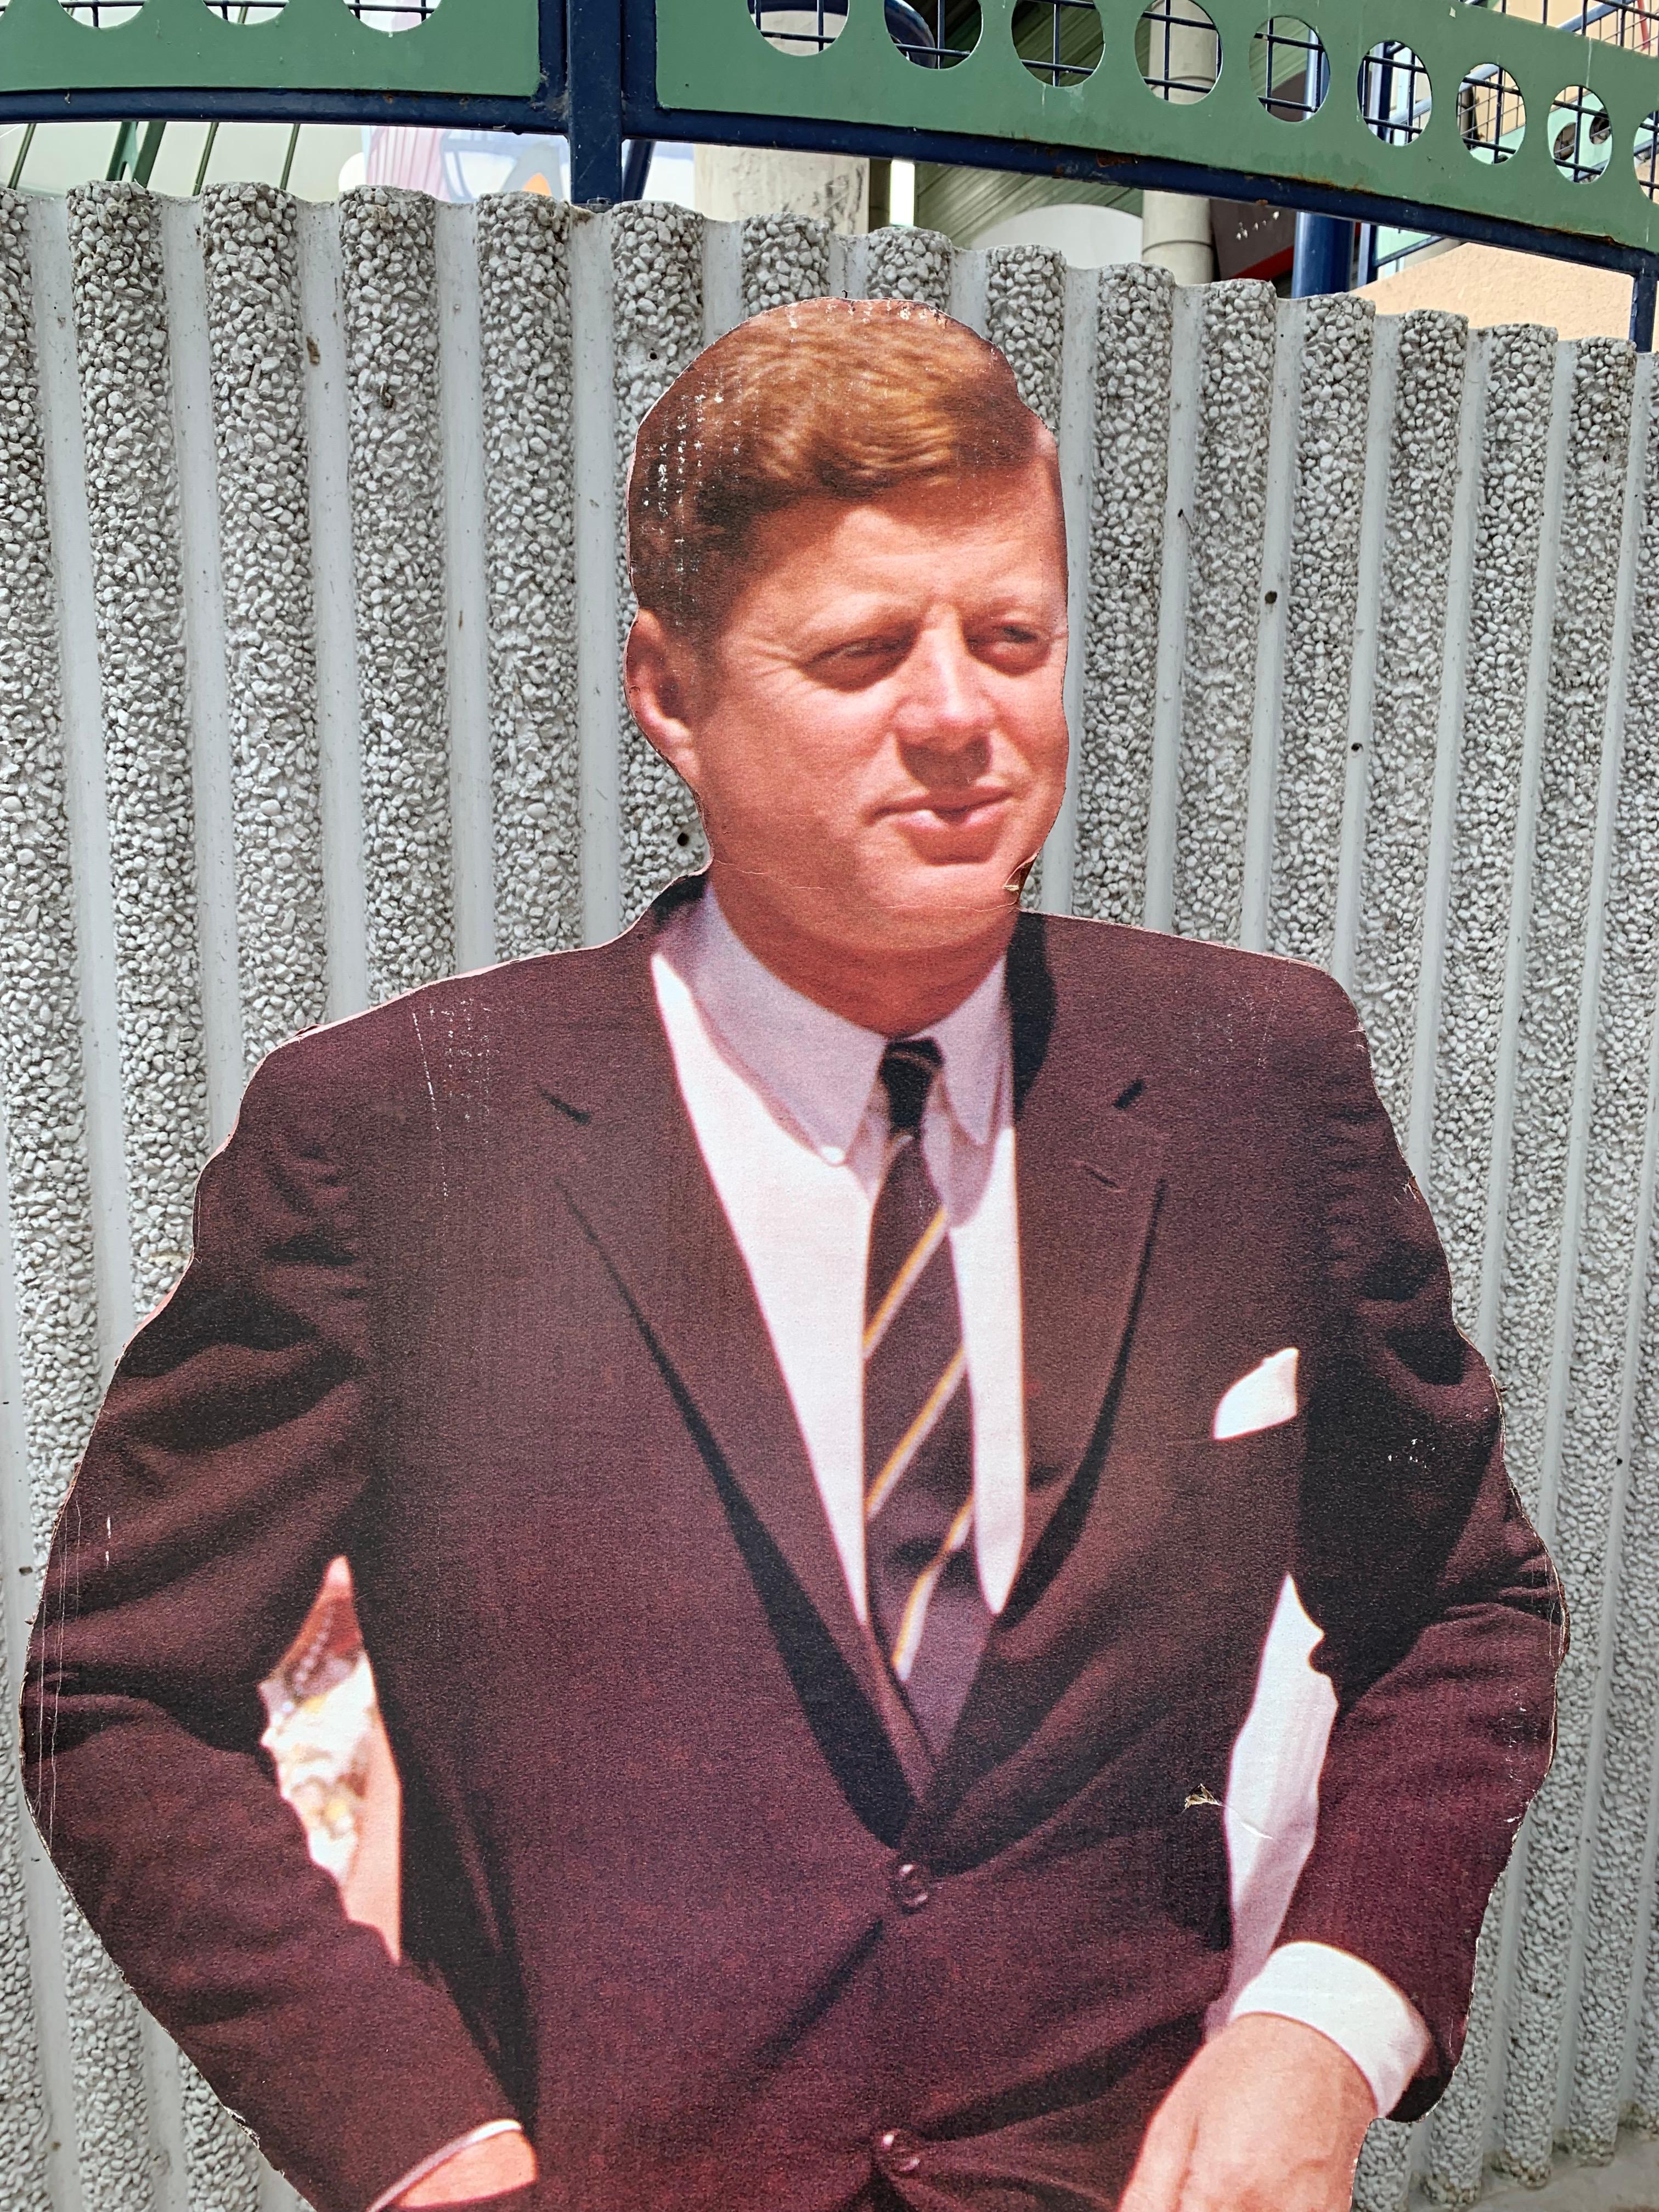 Scherenschnitt
Aus einem Wanderkino
1980-1997
Druck auf Karton, Holzunterlage

Abmessungen Kennedy : 190 x 65 
Abmessungen Marilyn: 157 x 98.